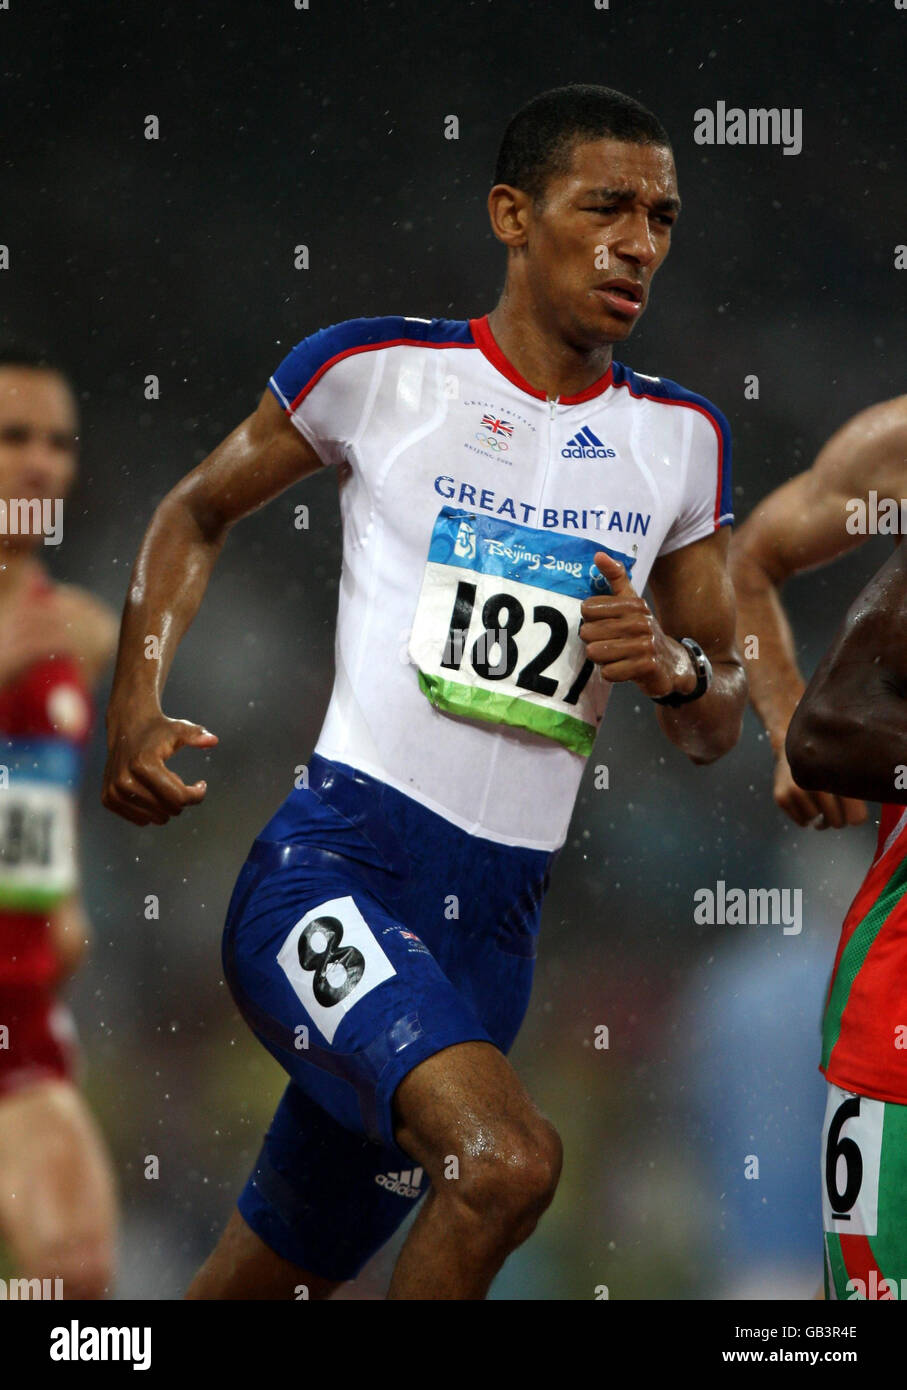 Der Großbritanniens Michael Rimmer beim 800 m Halbfinale der Männer im Nationalstadion in Peking während der Olympischen Spiele 2008 in Peking. Stockfoto